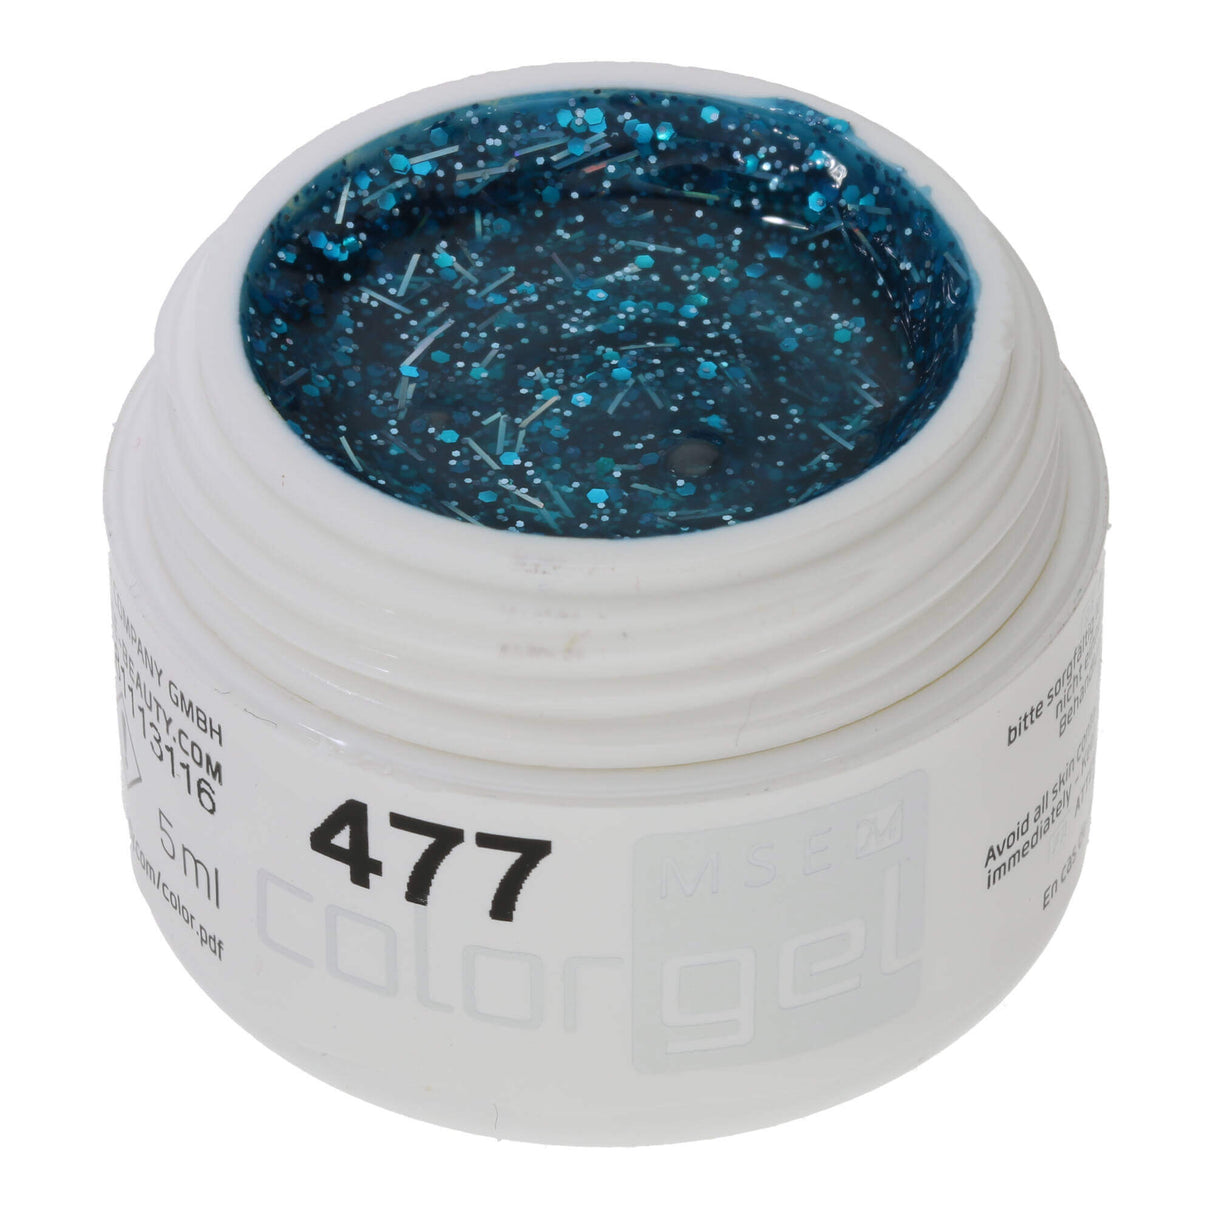 # 477 Premium-GLITTER Color Gel 5ml màu ngọc lam với ánh ngọc và sợi bạc